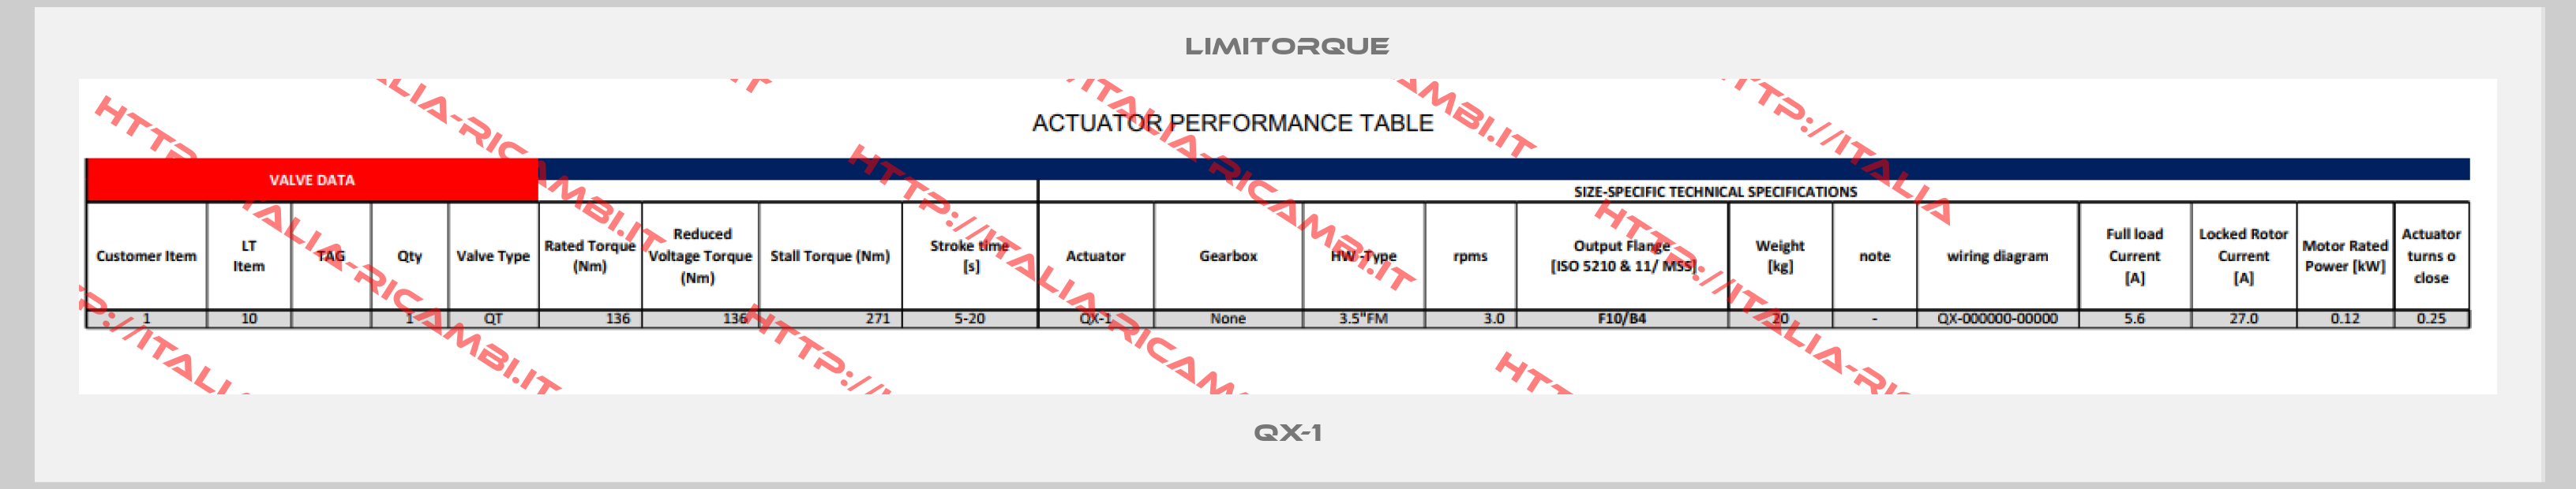 Limitorque-QX-1